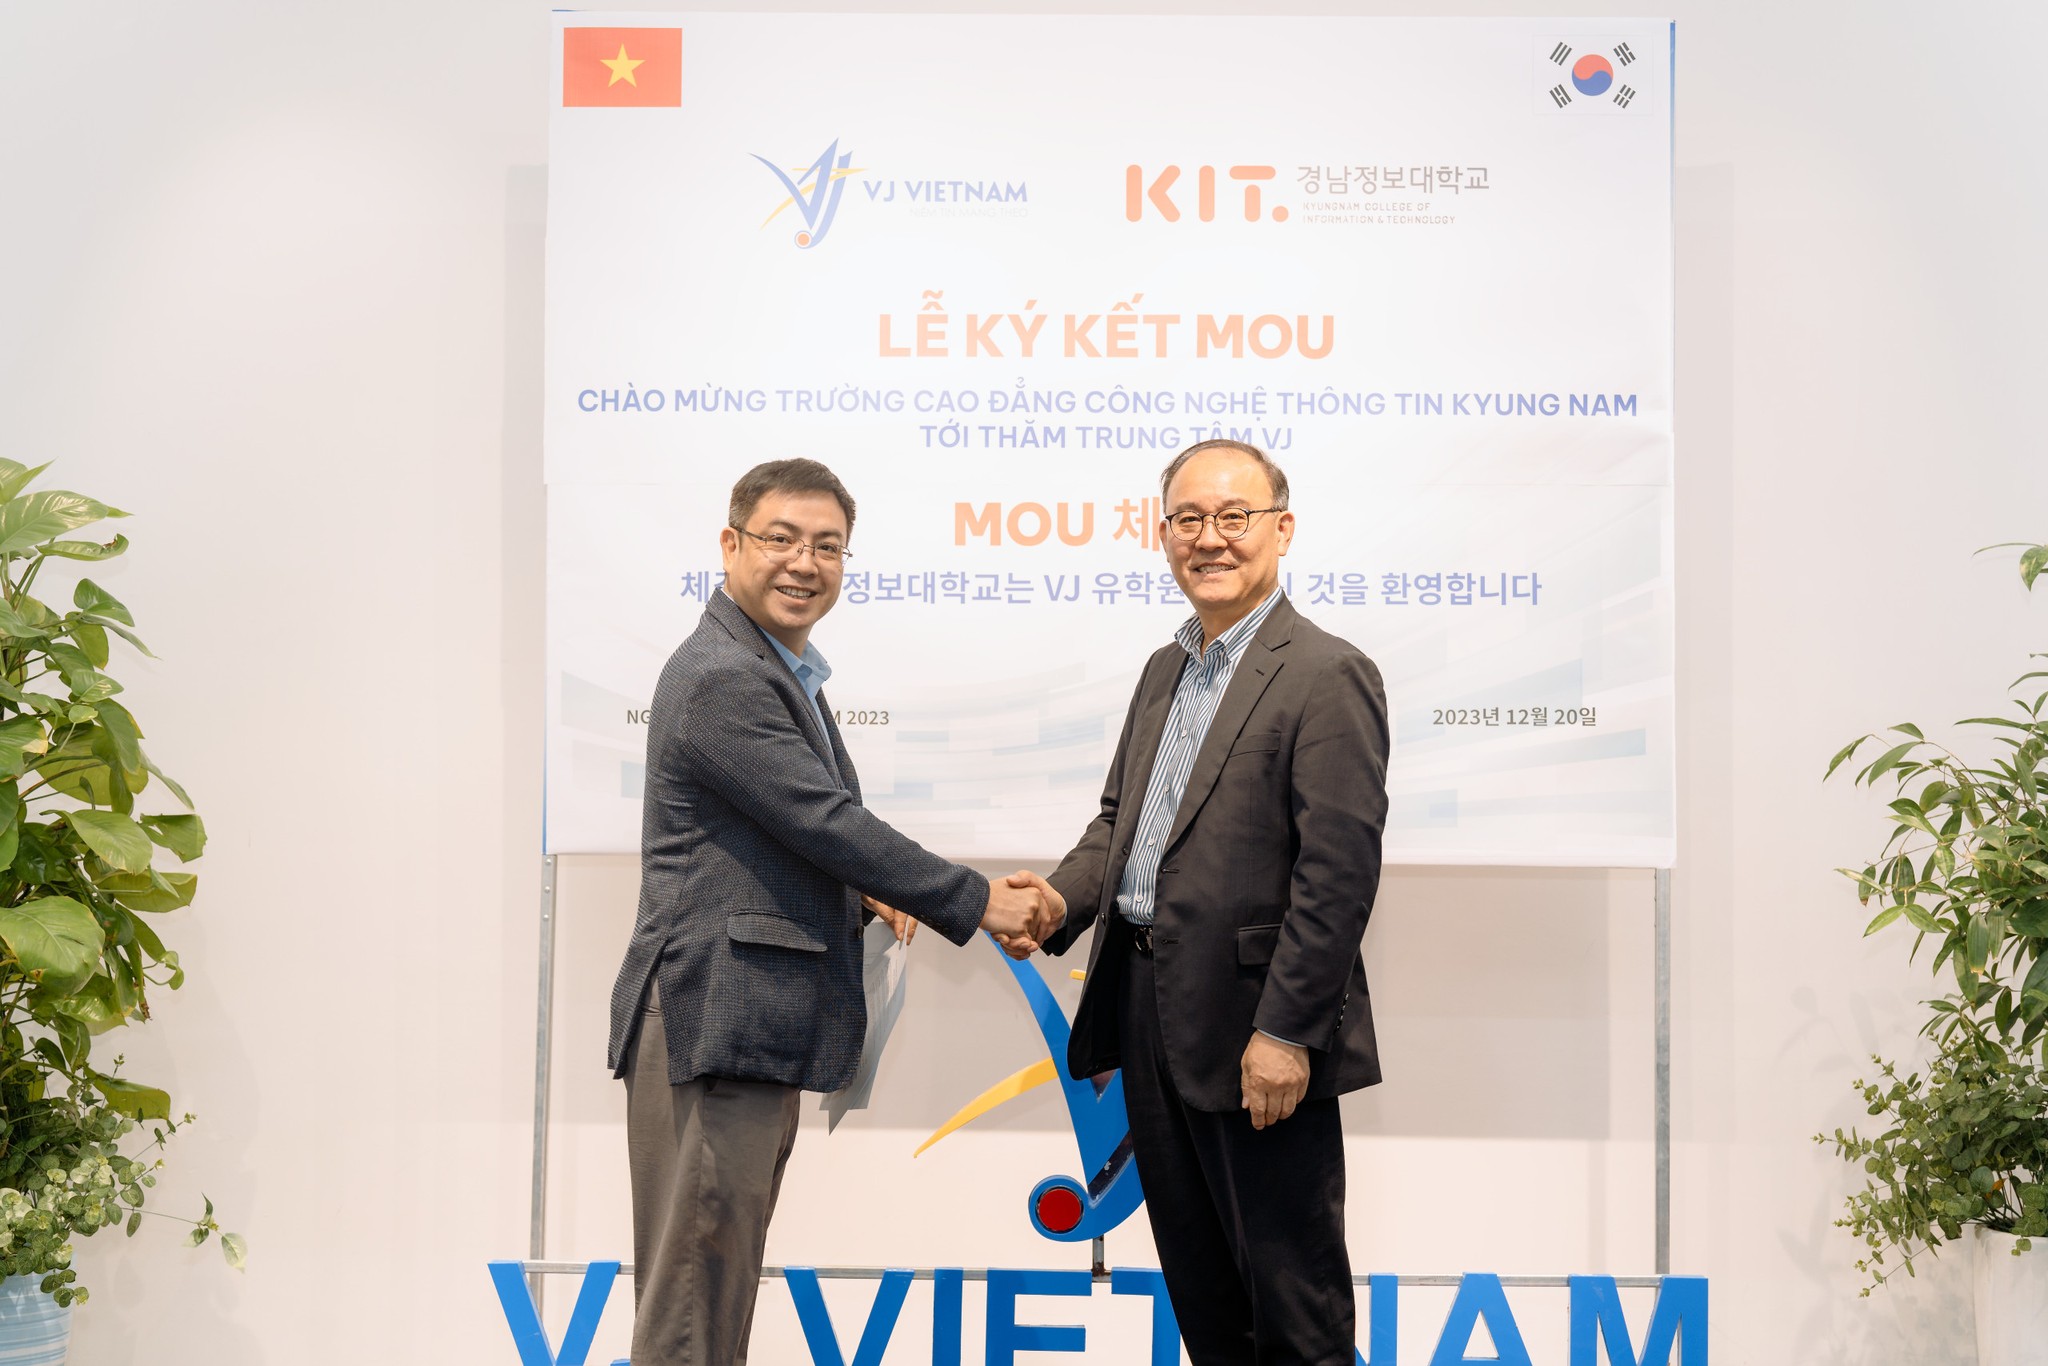 VJ ký kết hợp tác MOU cùng với Cao đẳng Công nghệ thông tin Kyungnam